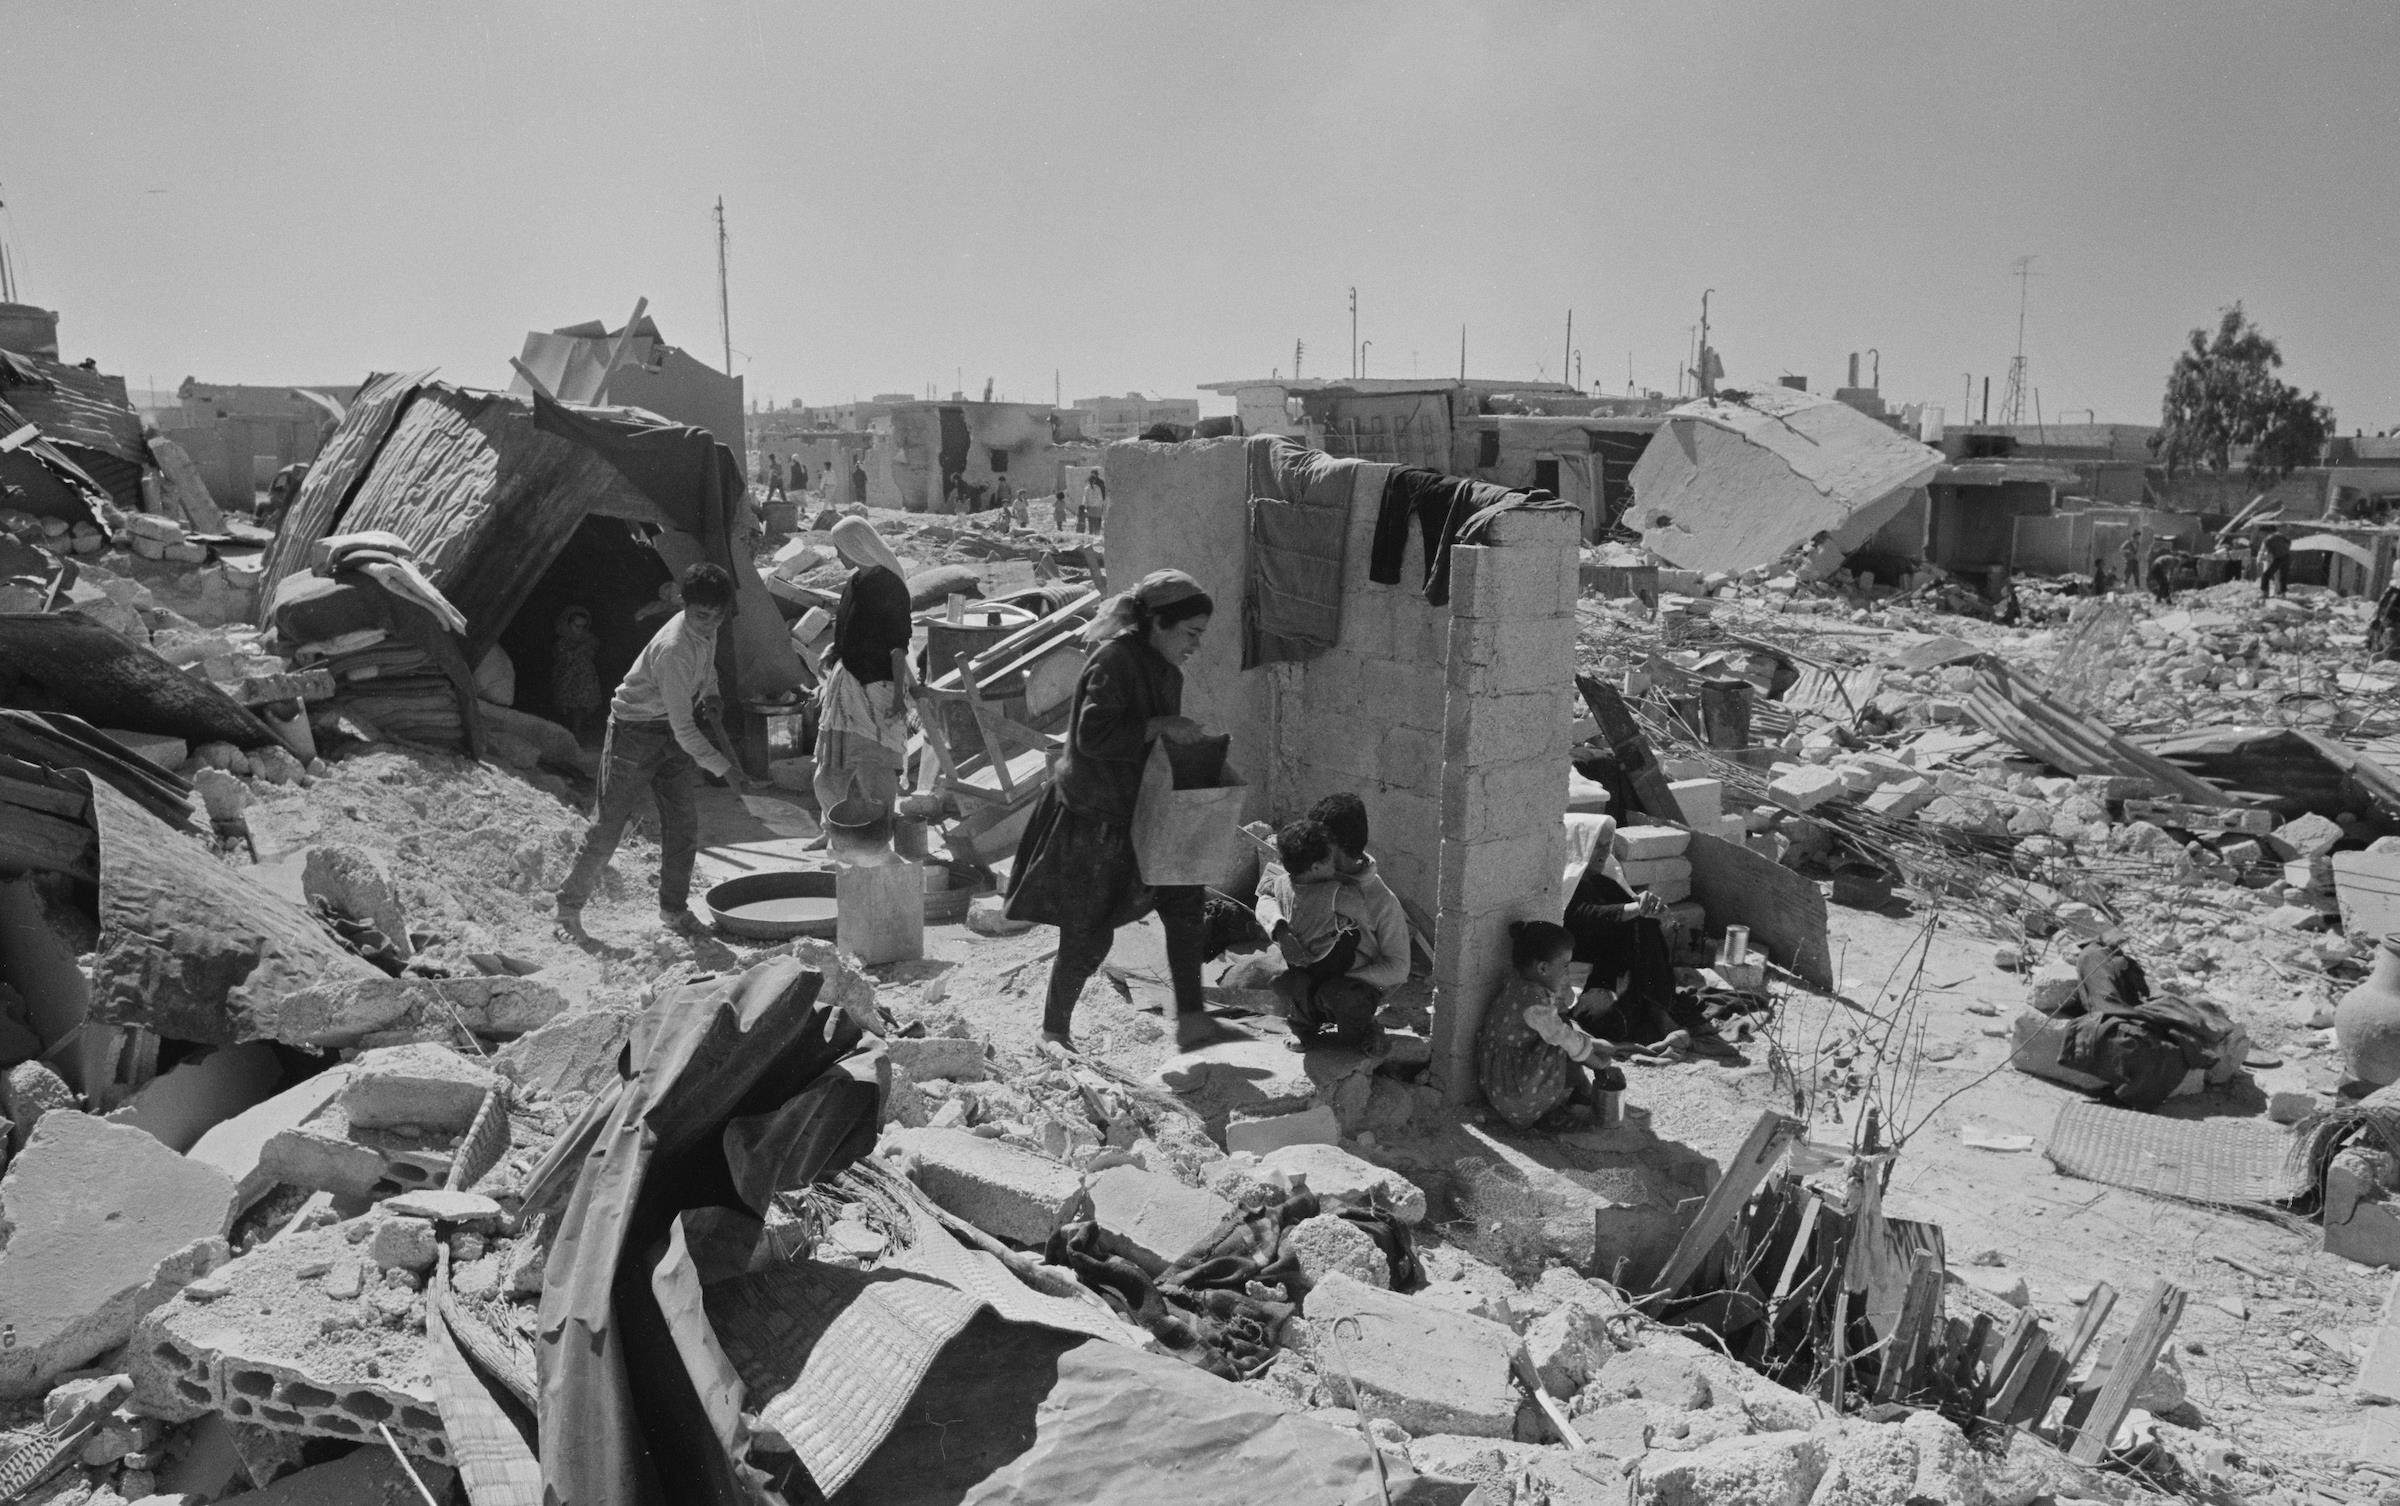 Kara Eylül'ün ardından molozlar arasında günlük işlerine devam eden Filistinli mülteciler.